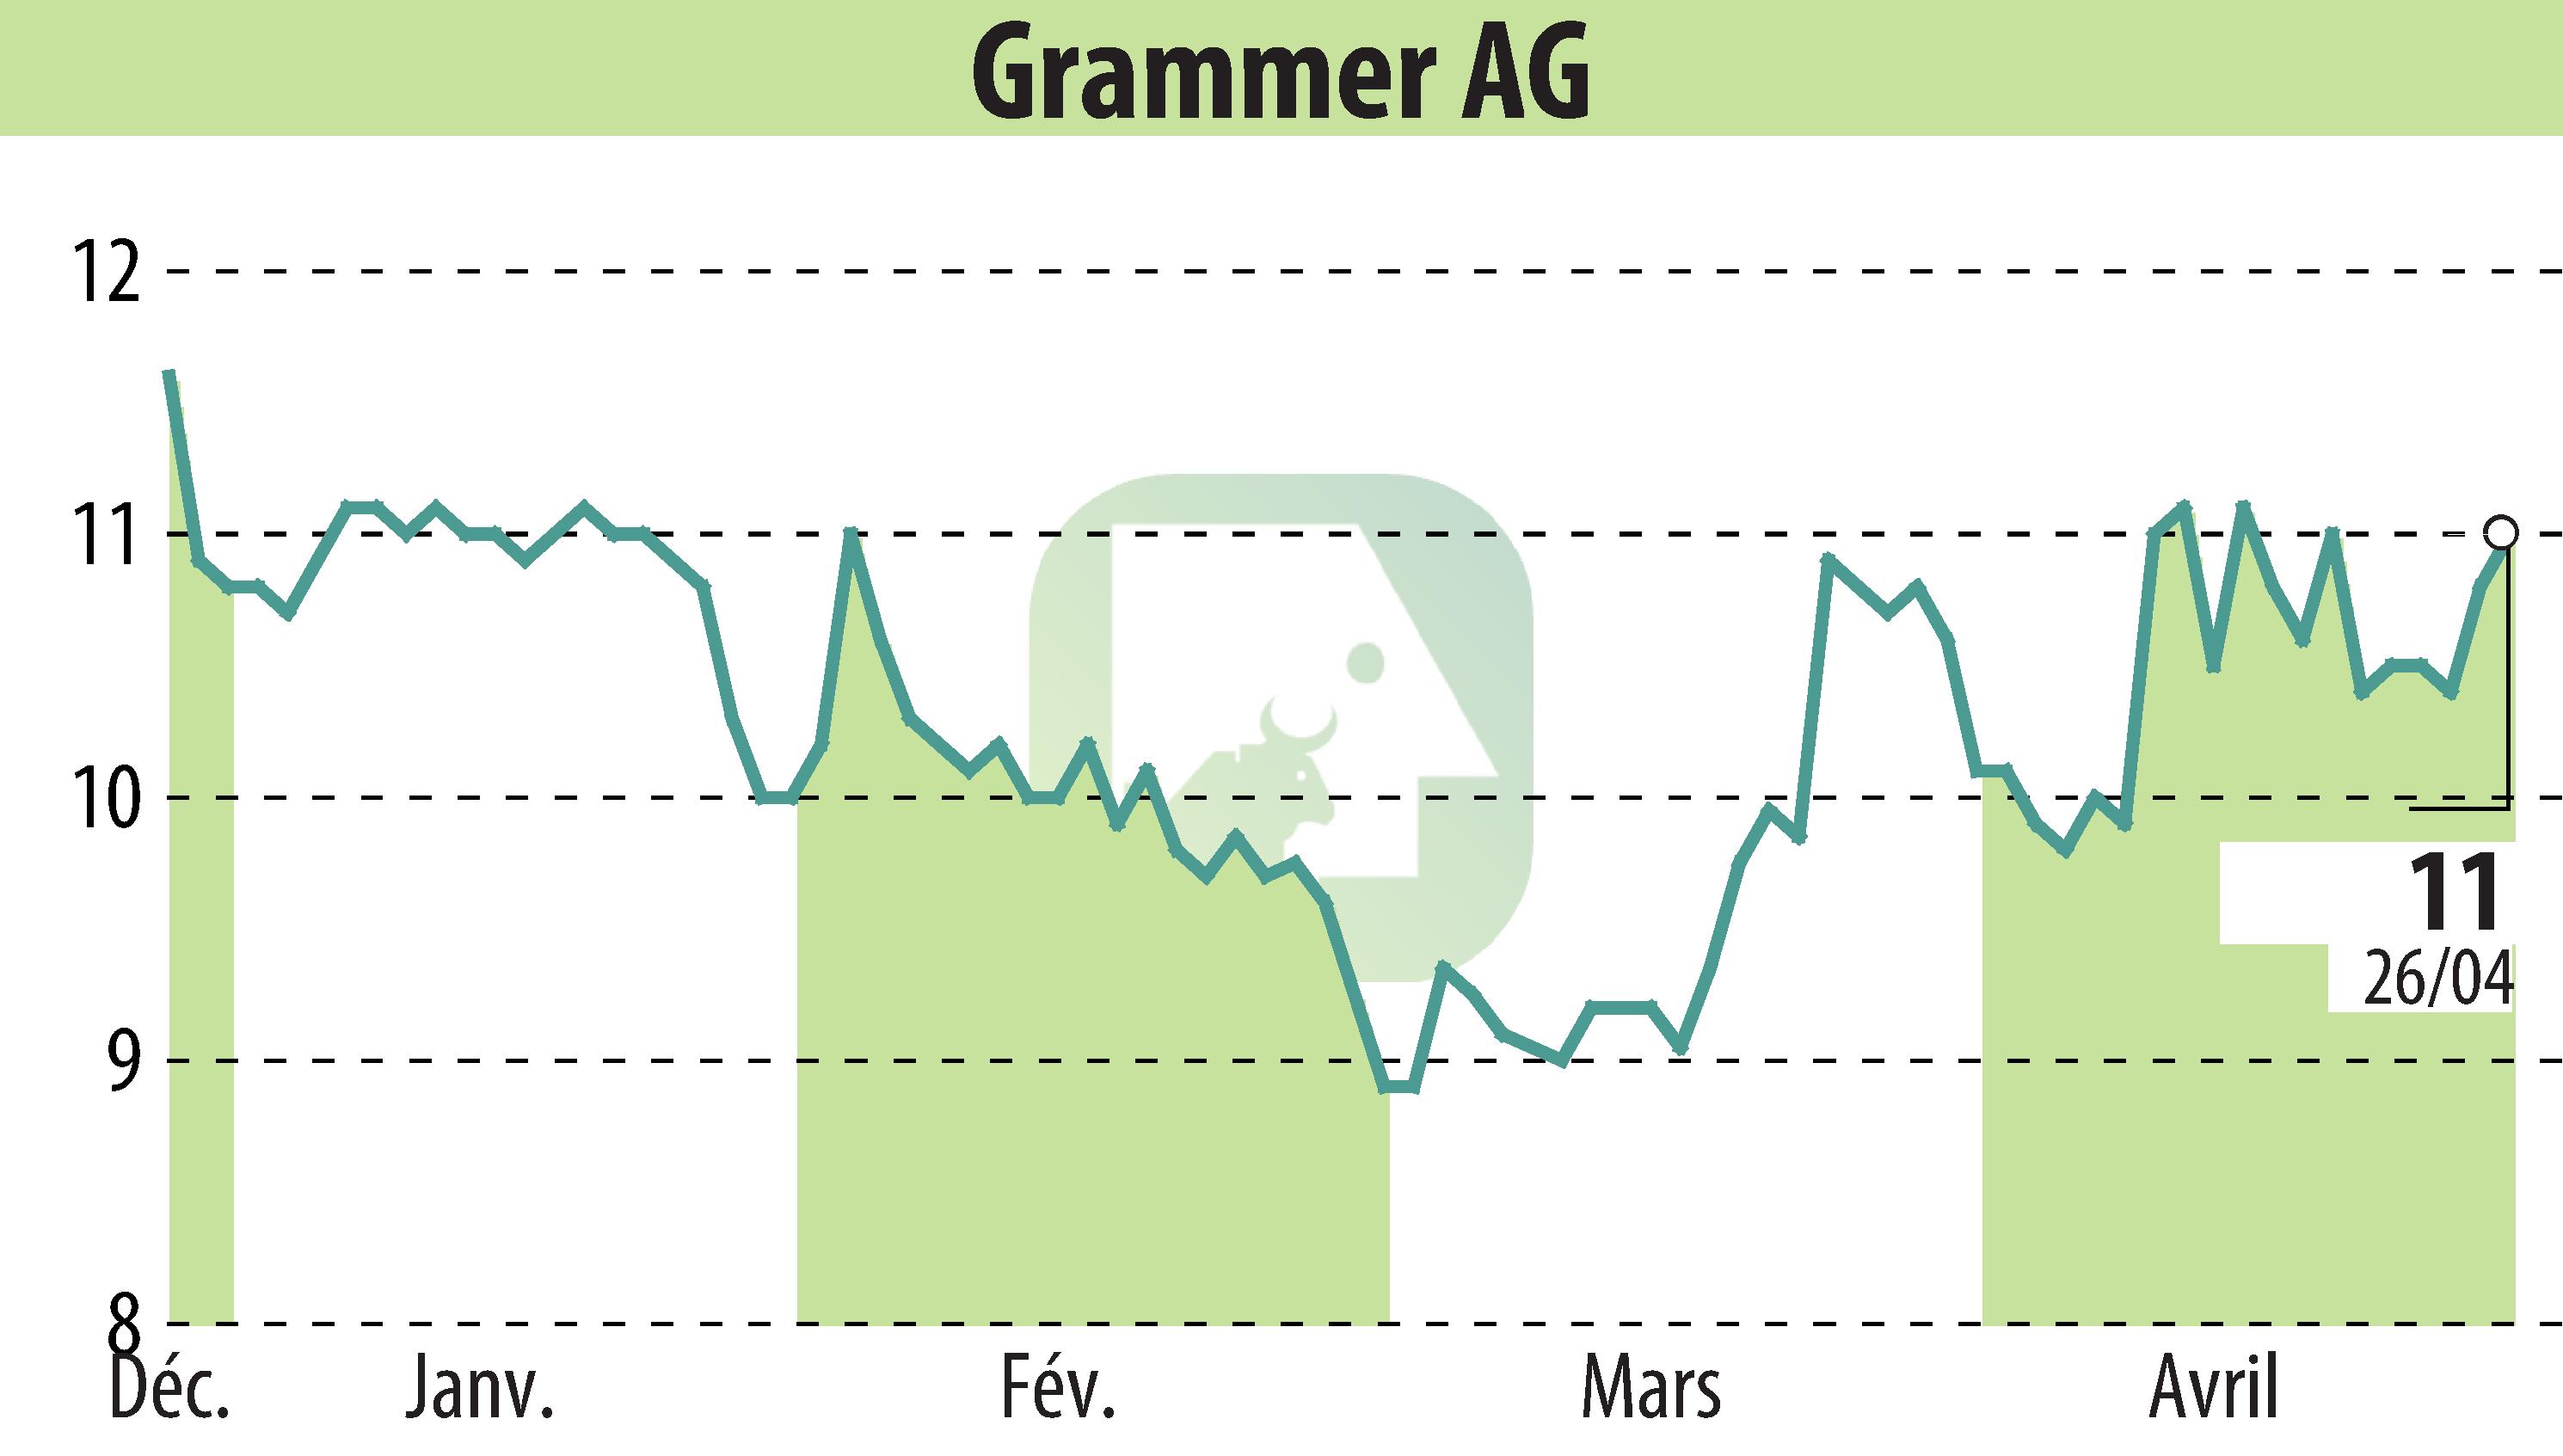 Graphique de l'évolution du cours de l'action Grammer AG (EBR:GMM).